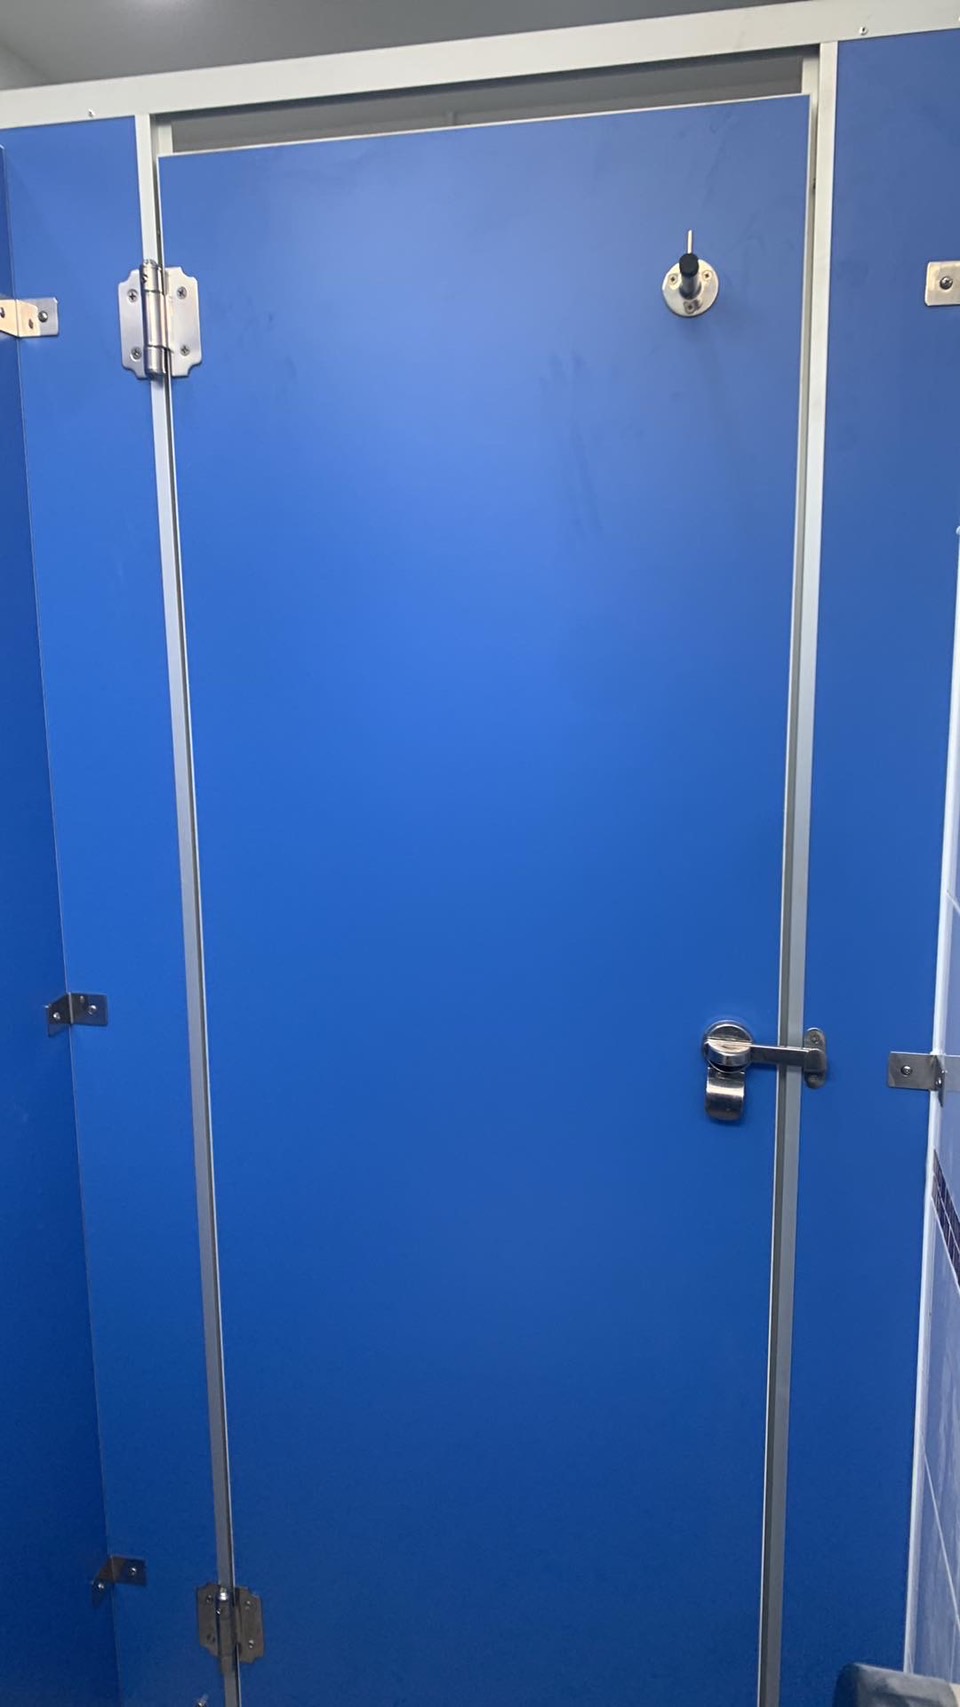 ติดตั้งผนังกั้นห้องน้ำ BGC สีฟ้า จังหวัดปราจีนบุรี